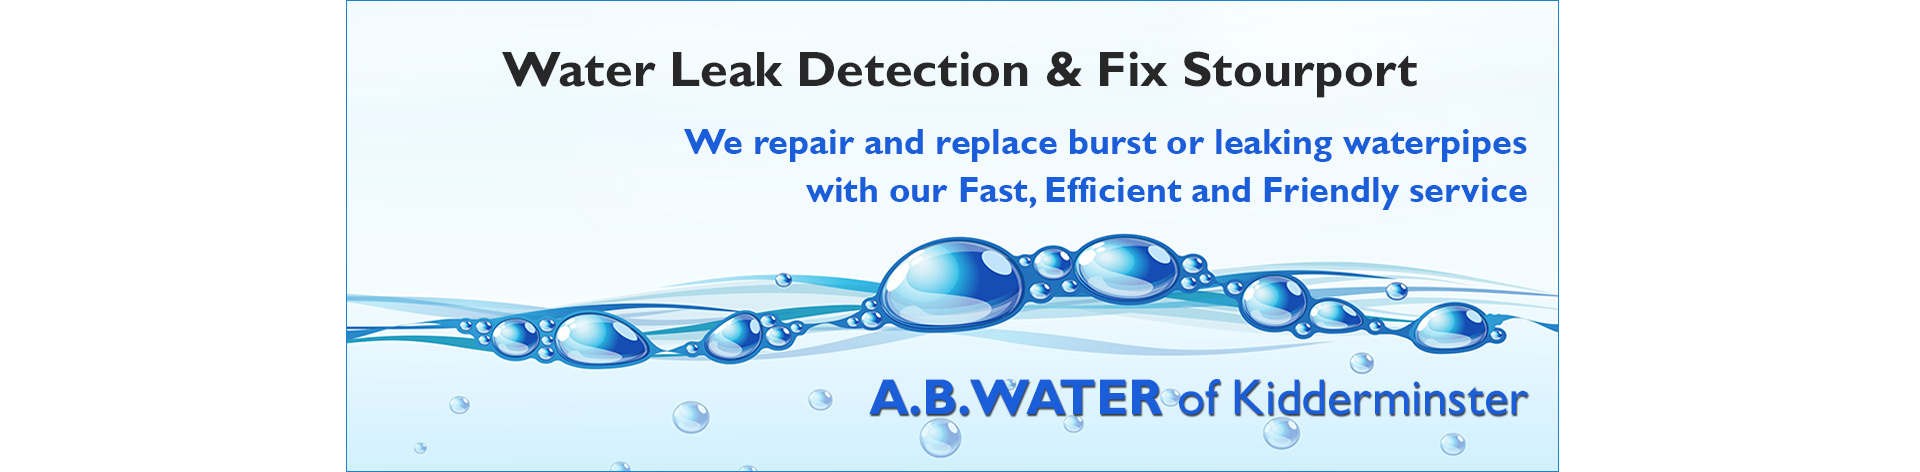 leak-detection-stourport